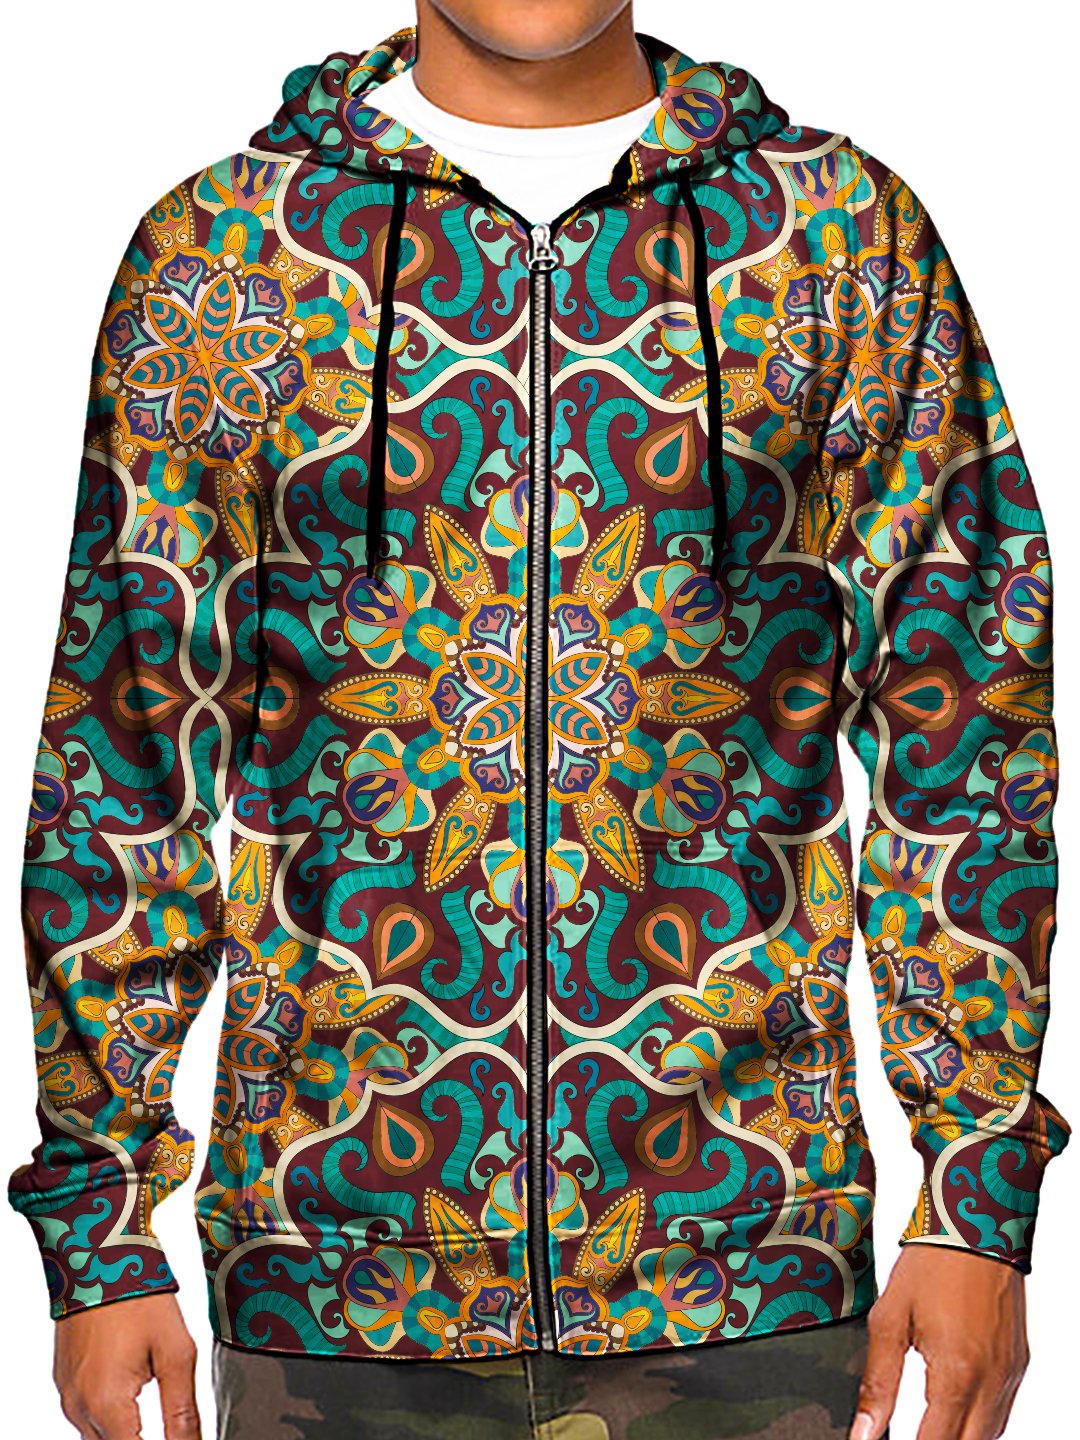 Model wearing GratefullyDyed Apparel psychedelic sacred geometry zip-up hoodie.